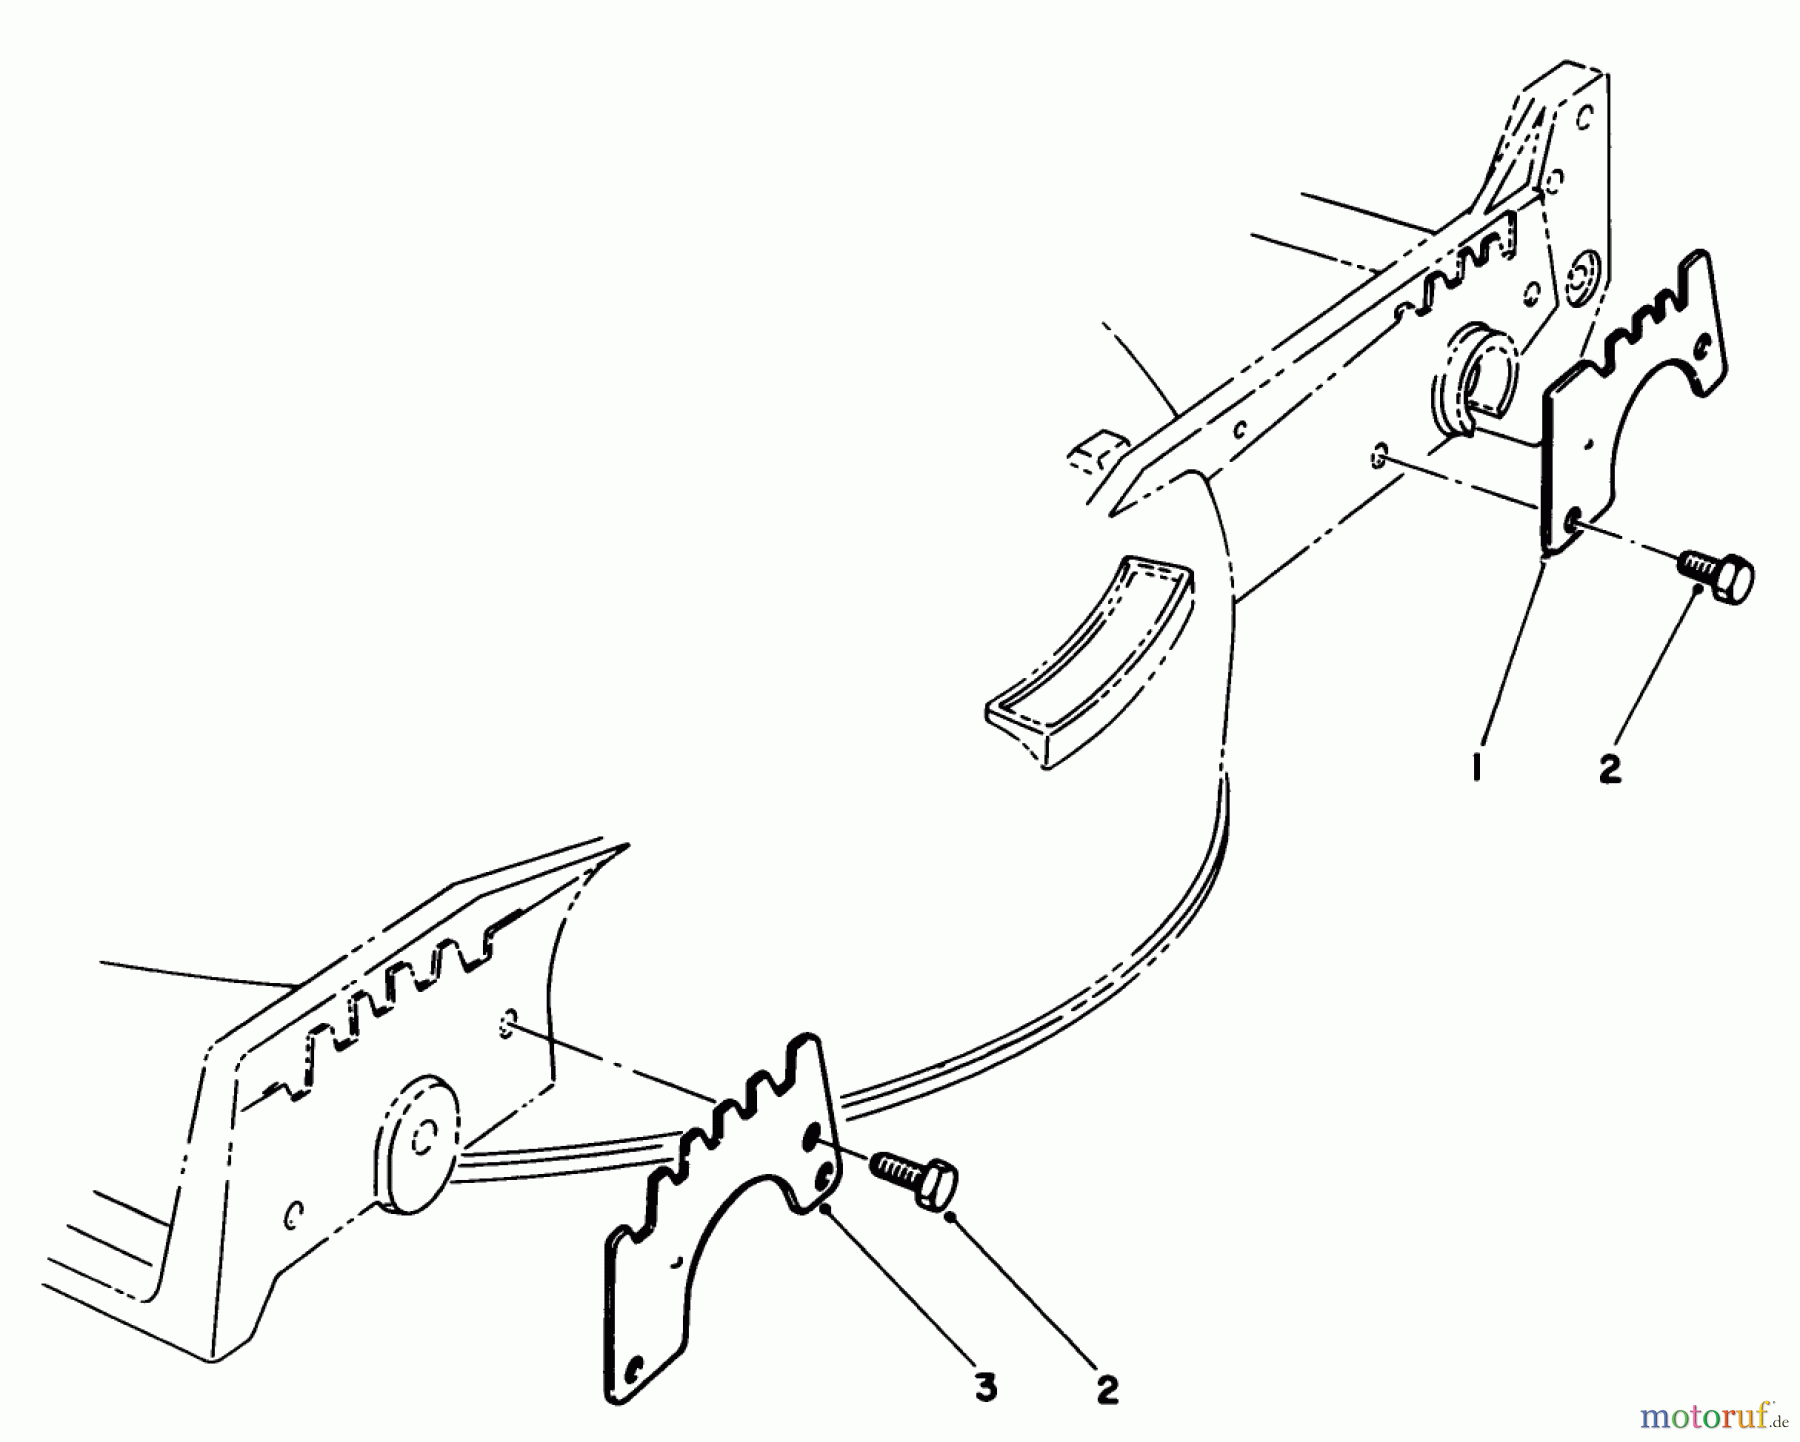  Toro Neu Mowers, Walk-Behind Seite 1 20628C - Toro Lawnmower, 1986 (6000001-6999999) WEAR PLATE KIT NO. 49-4080 (OPTIONAL)